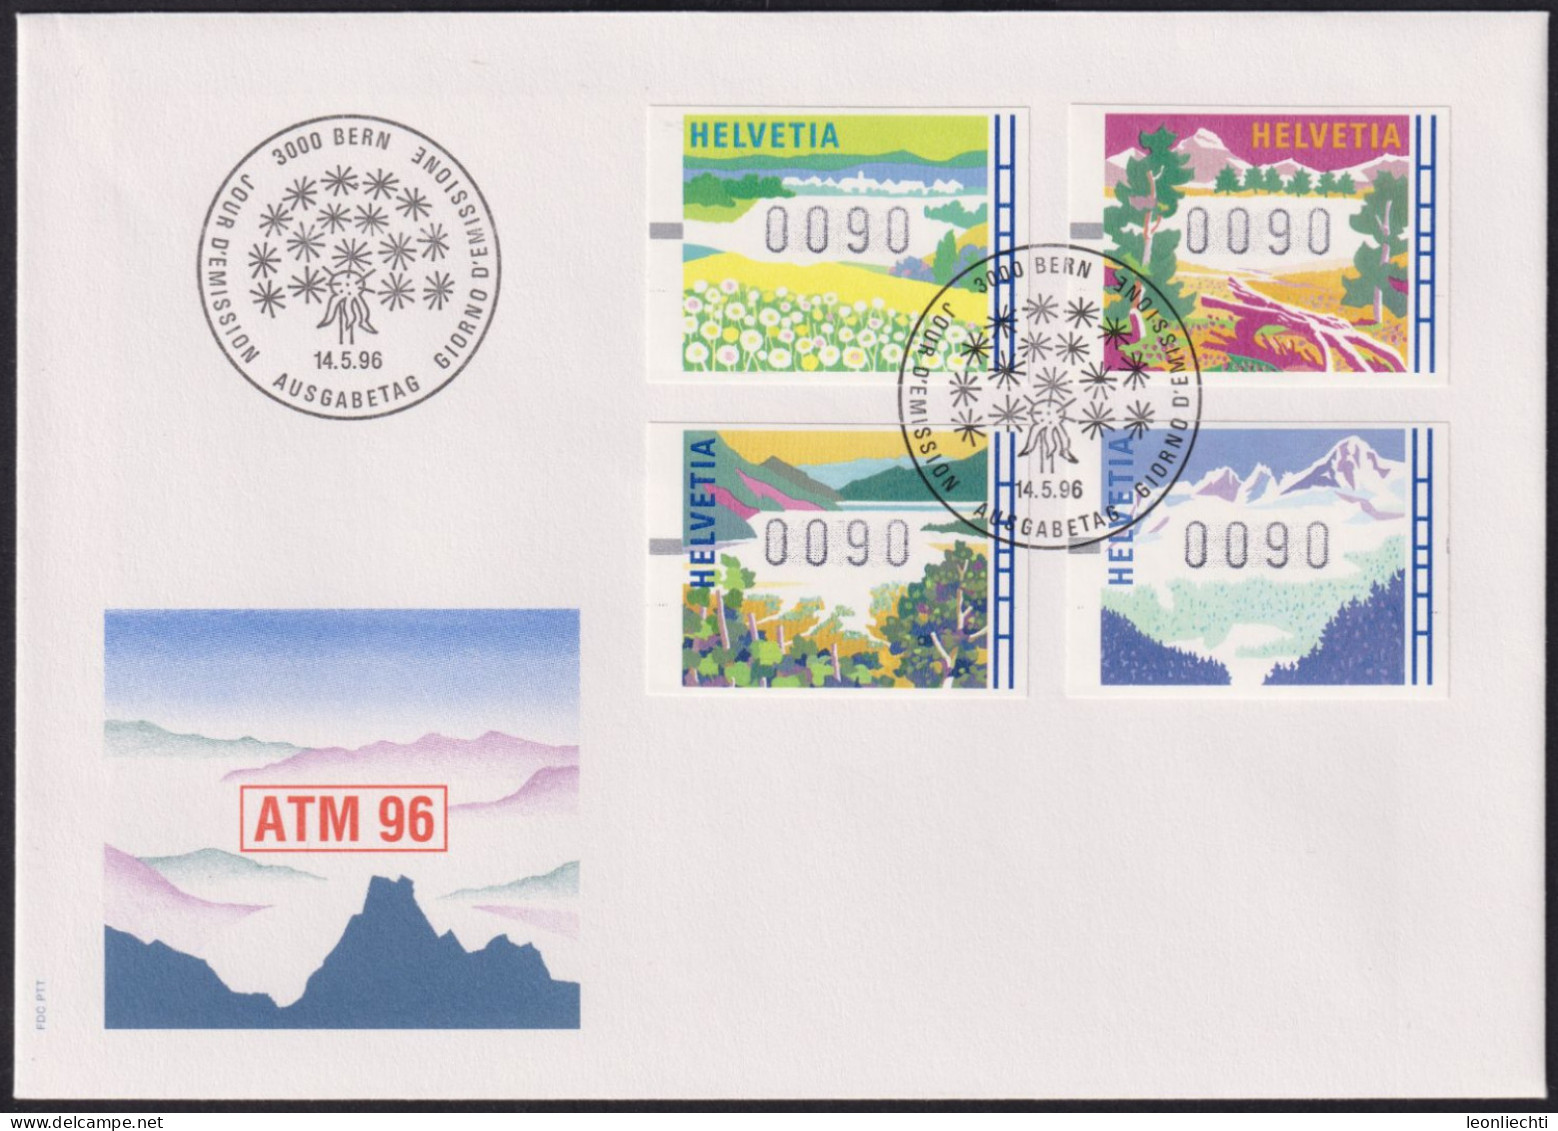 1996 Schweiz, FDC ATM 96, Mi:CH AT7-10, Yt:CH AT 11-14, Zum:CH AT11-14, Jahreszeiten - Automatic Stamps